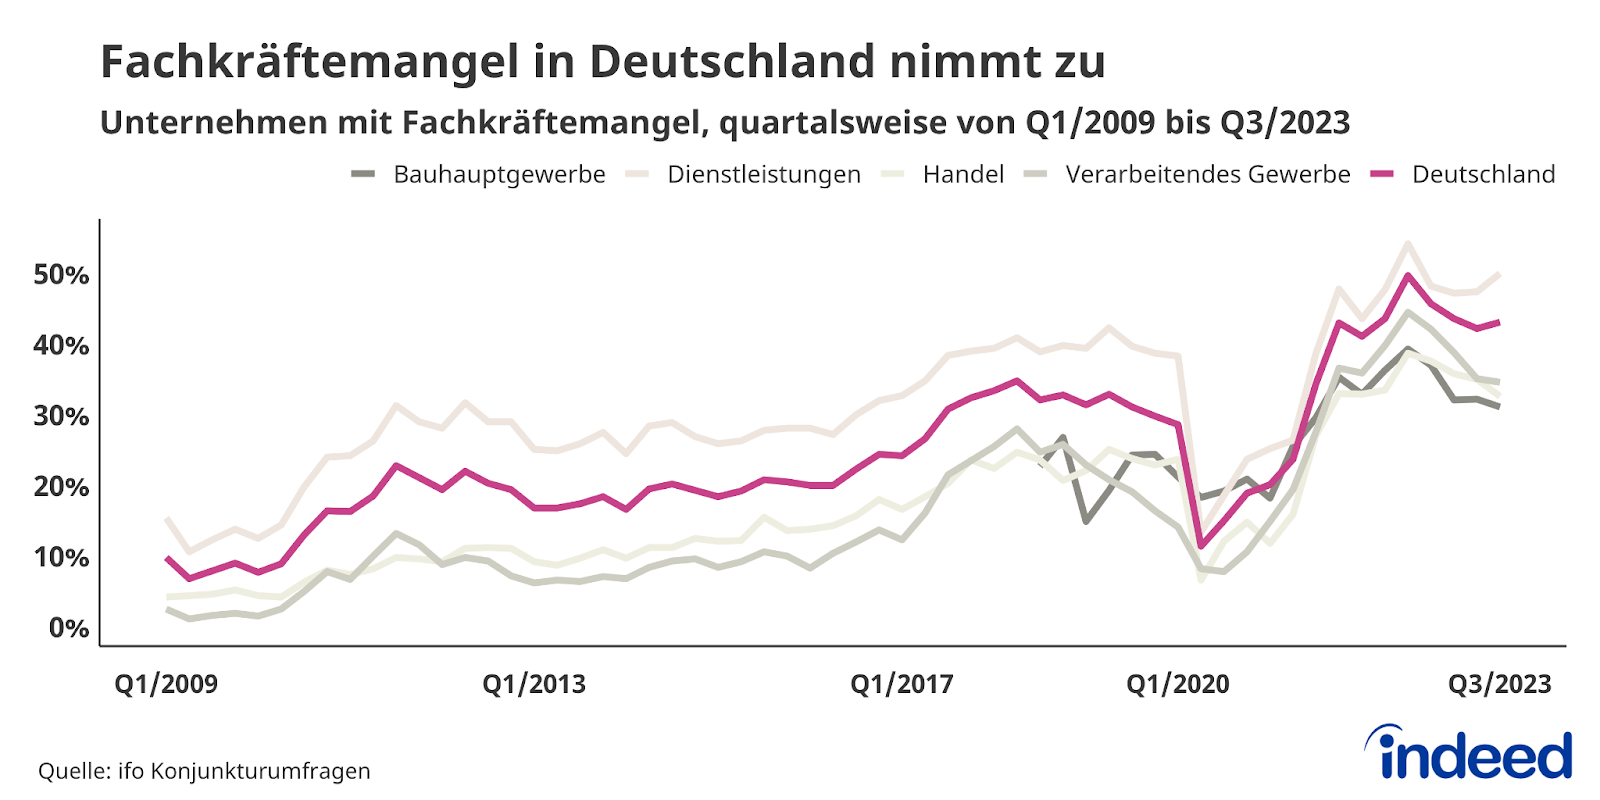 Das Liniendiagramm mit dem Titel „Fachkräftemangel in Deutschland nimmt zu“ zeigt den Anteil der Unternehmen mit Fachkräftemangel in Deutschland von Q1/2009 bis Q3/2023 für die Branchen Bauhauptgewerbe, Dienstleistungen, Handel, Verarbeitendes Gewerbe sowie den Gesamttrend für Deutschland. Gut sichtbar ist der Knick zur Pandemie und der seitdem fast kontinuierliche Anstieg. Der aktuelle Deutschlandtrend liegt bei 43,1 % in Q3/2023 und ist damit wieder leicht gestiegen.